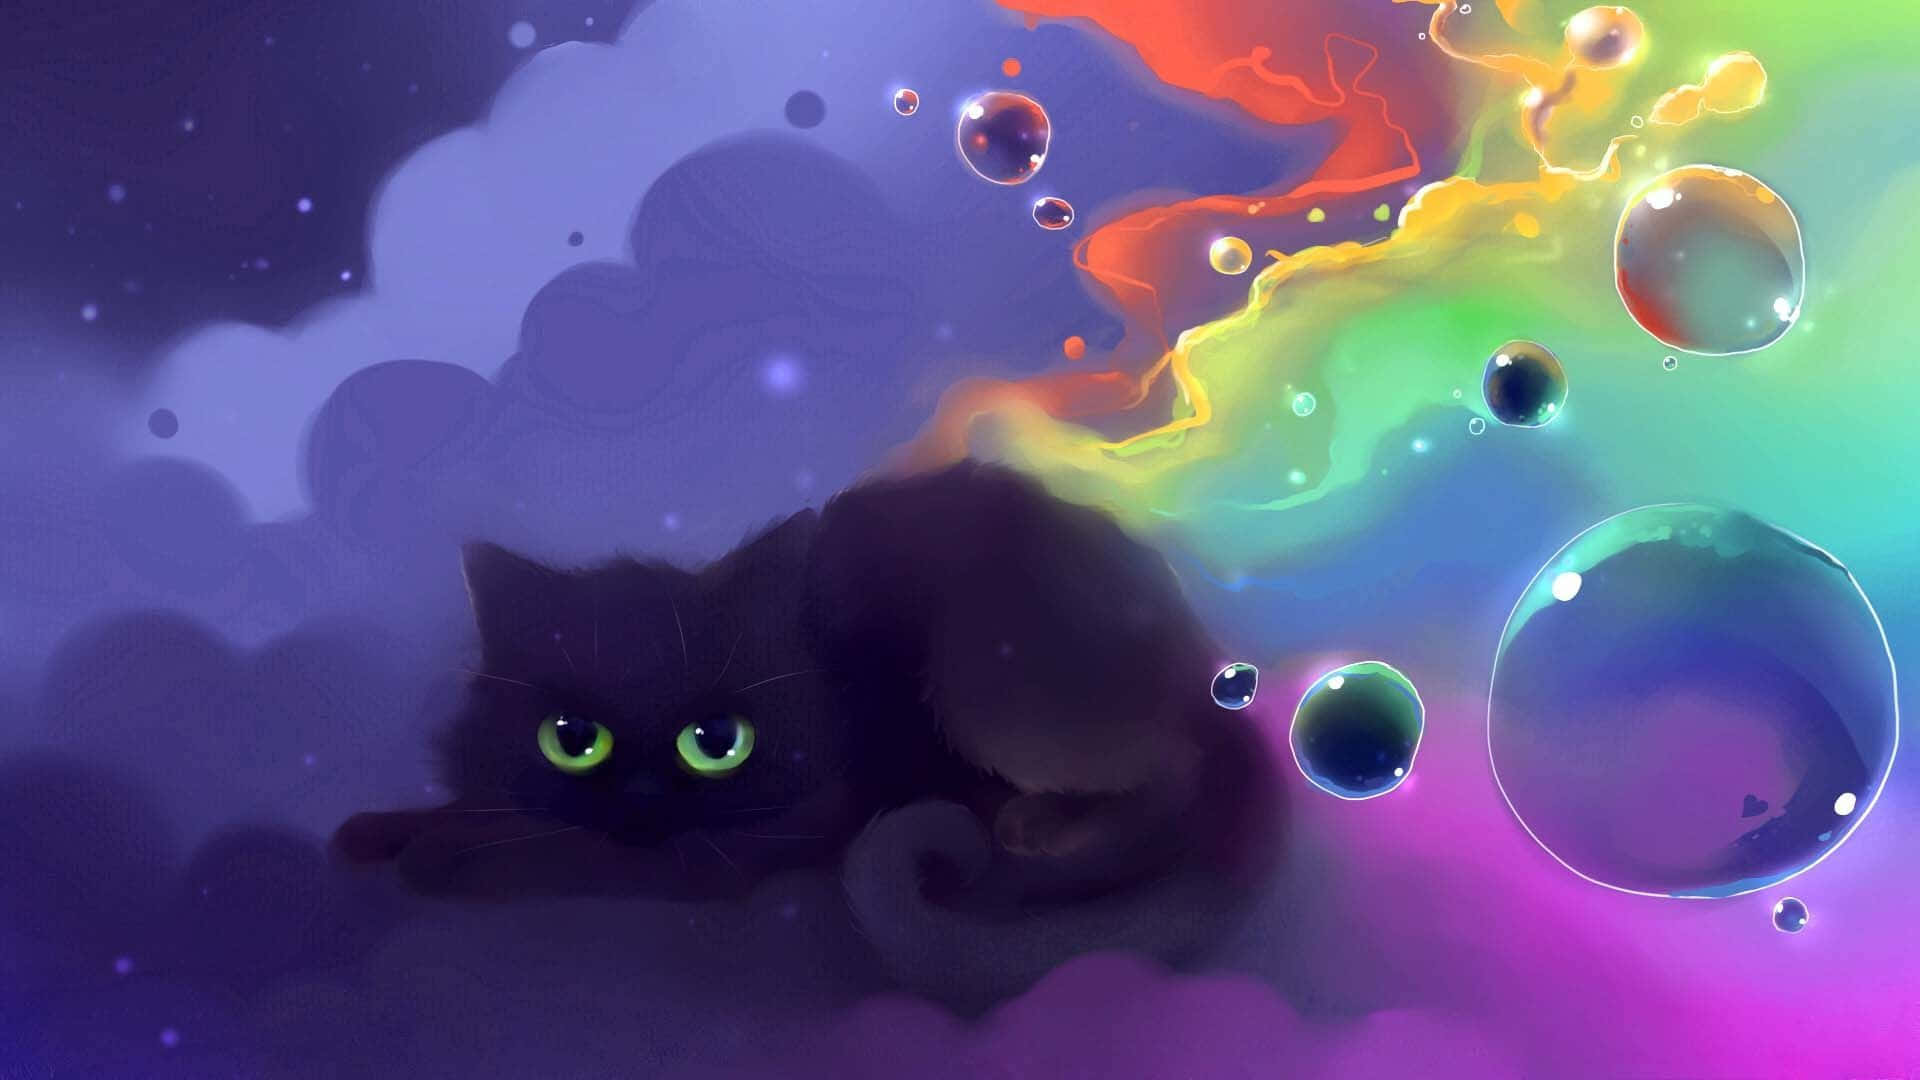 Dibujoanimado De Un Gato Espeluznante Y Colorido. Fondo de pantalla